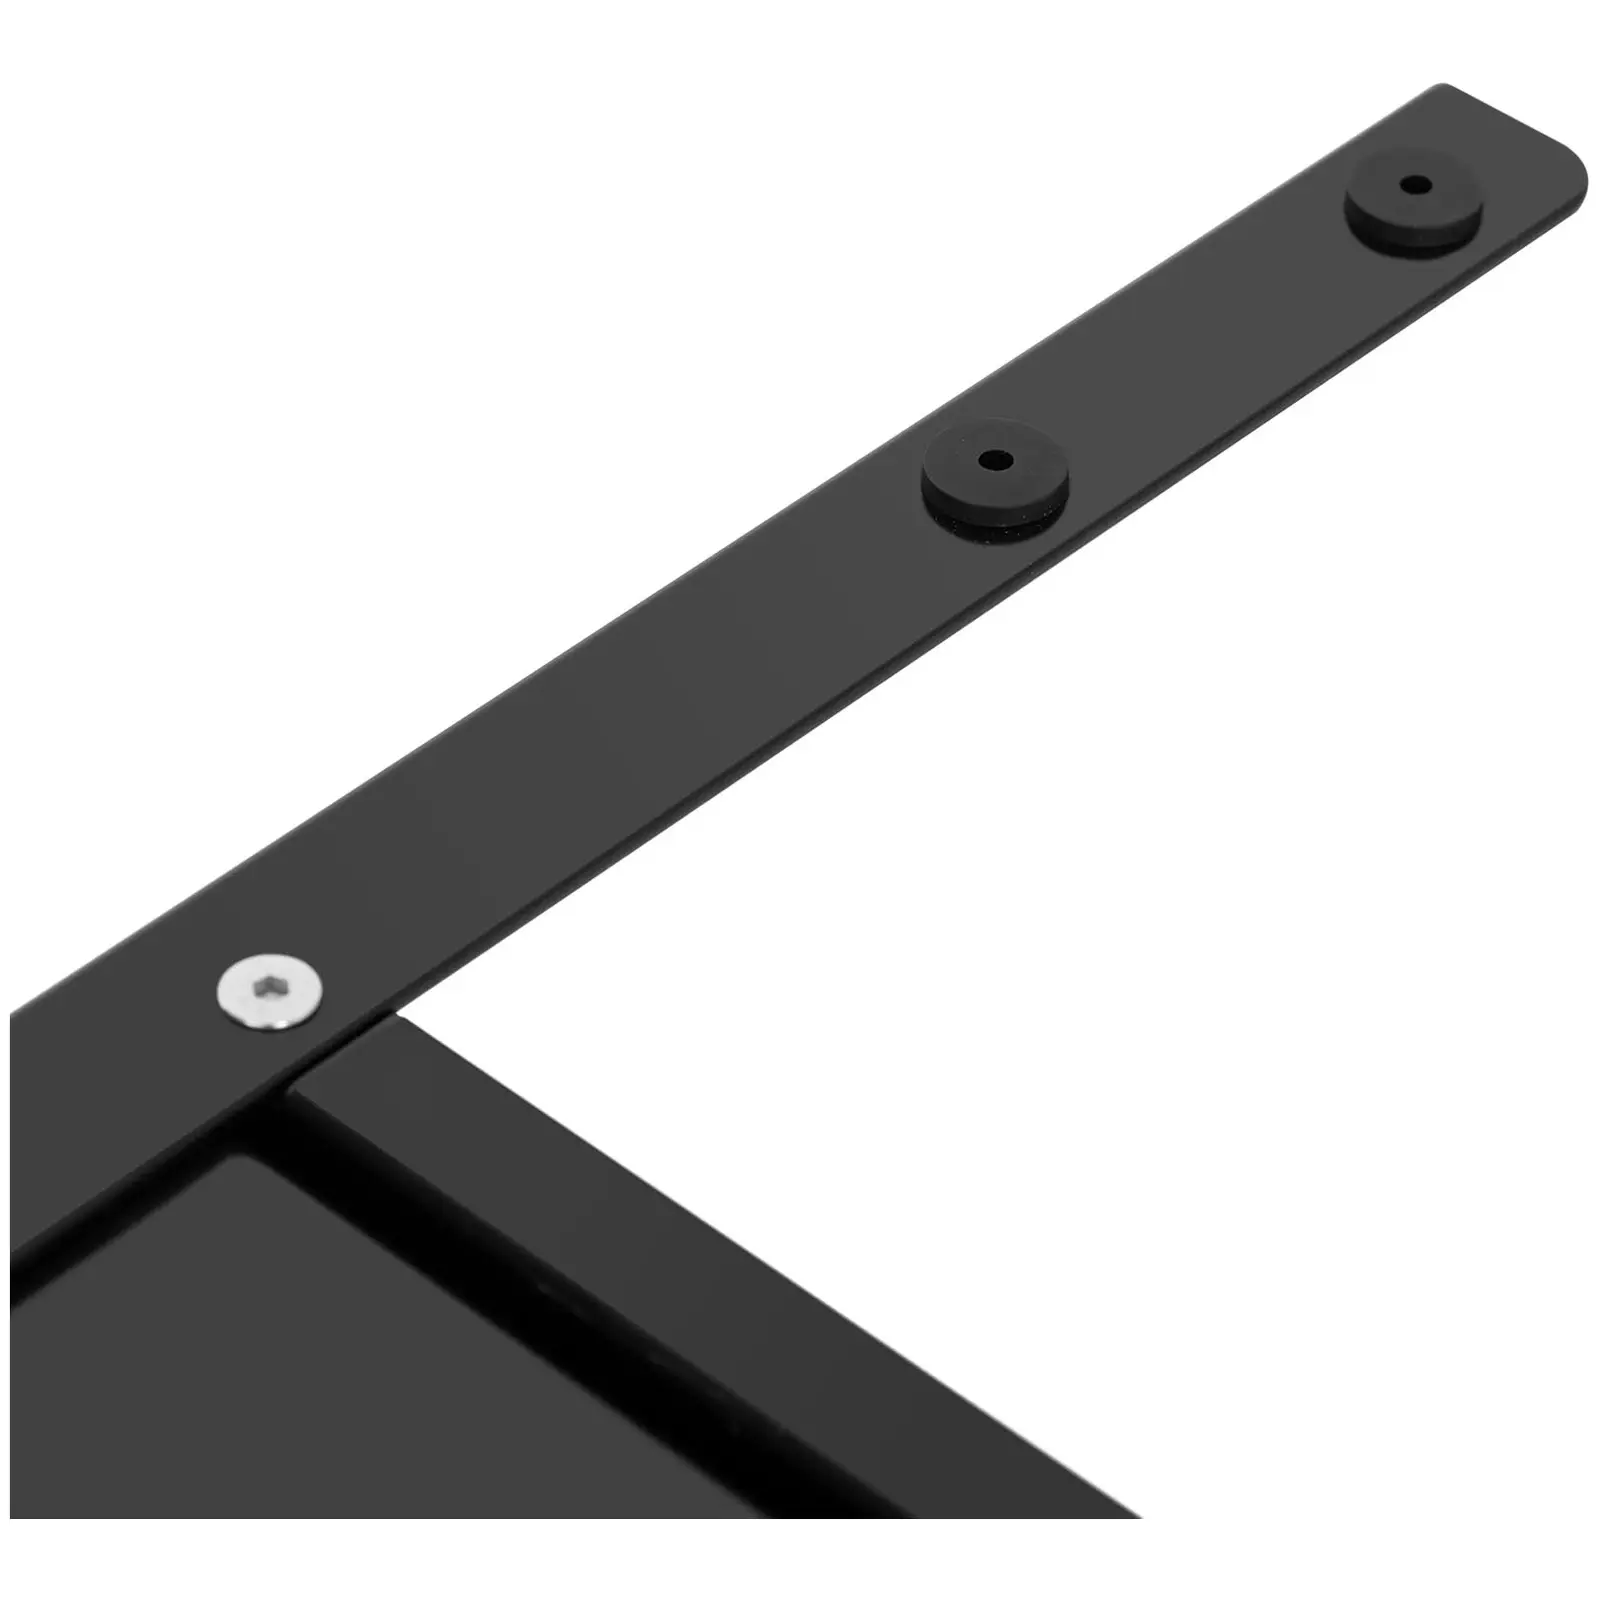 Adjustable Corner Desk Frame - Height: 69-118 cm - Width: 90-150 cm (left) / 110-190 cm (right) - Angle: 90 ° - 150 kg